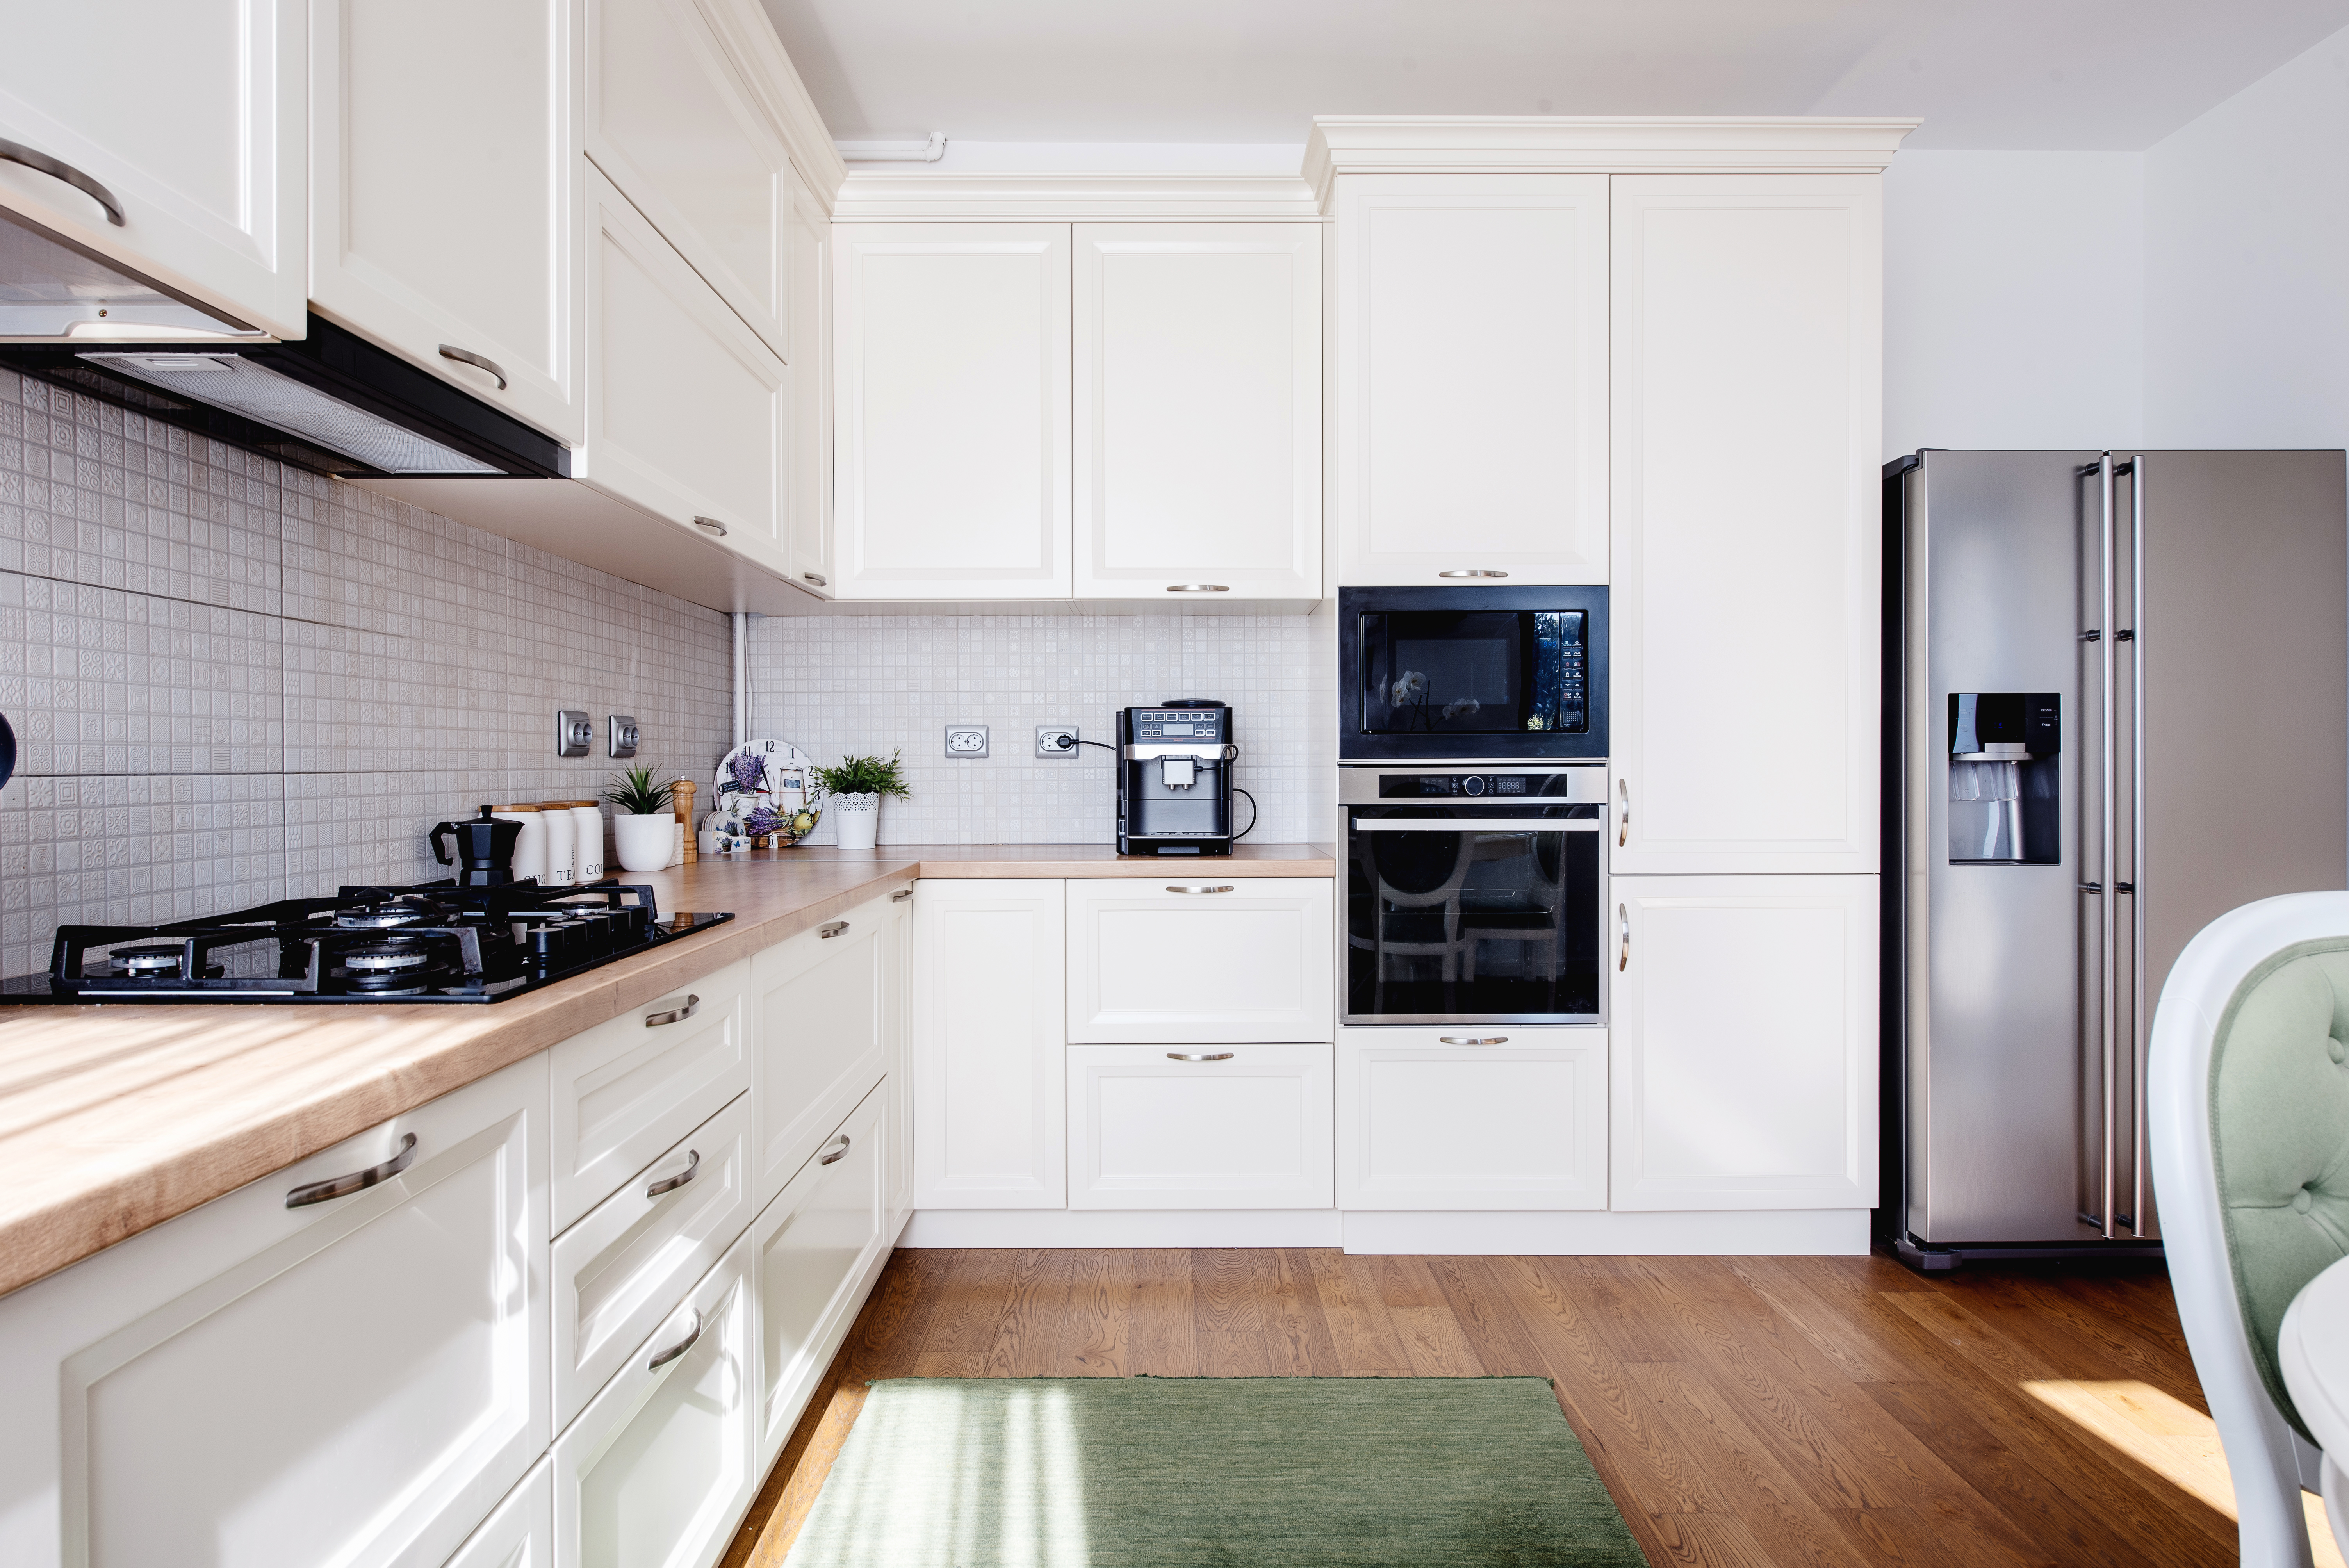 Clean, modern kitchen with new flooring.